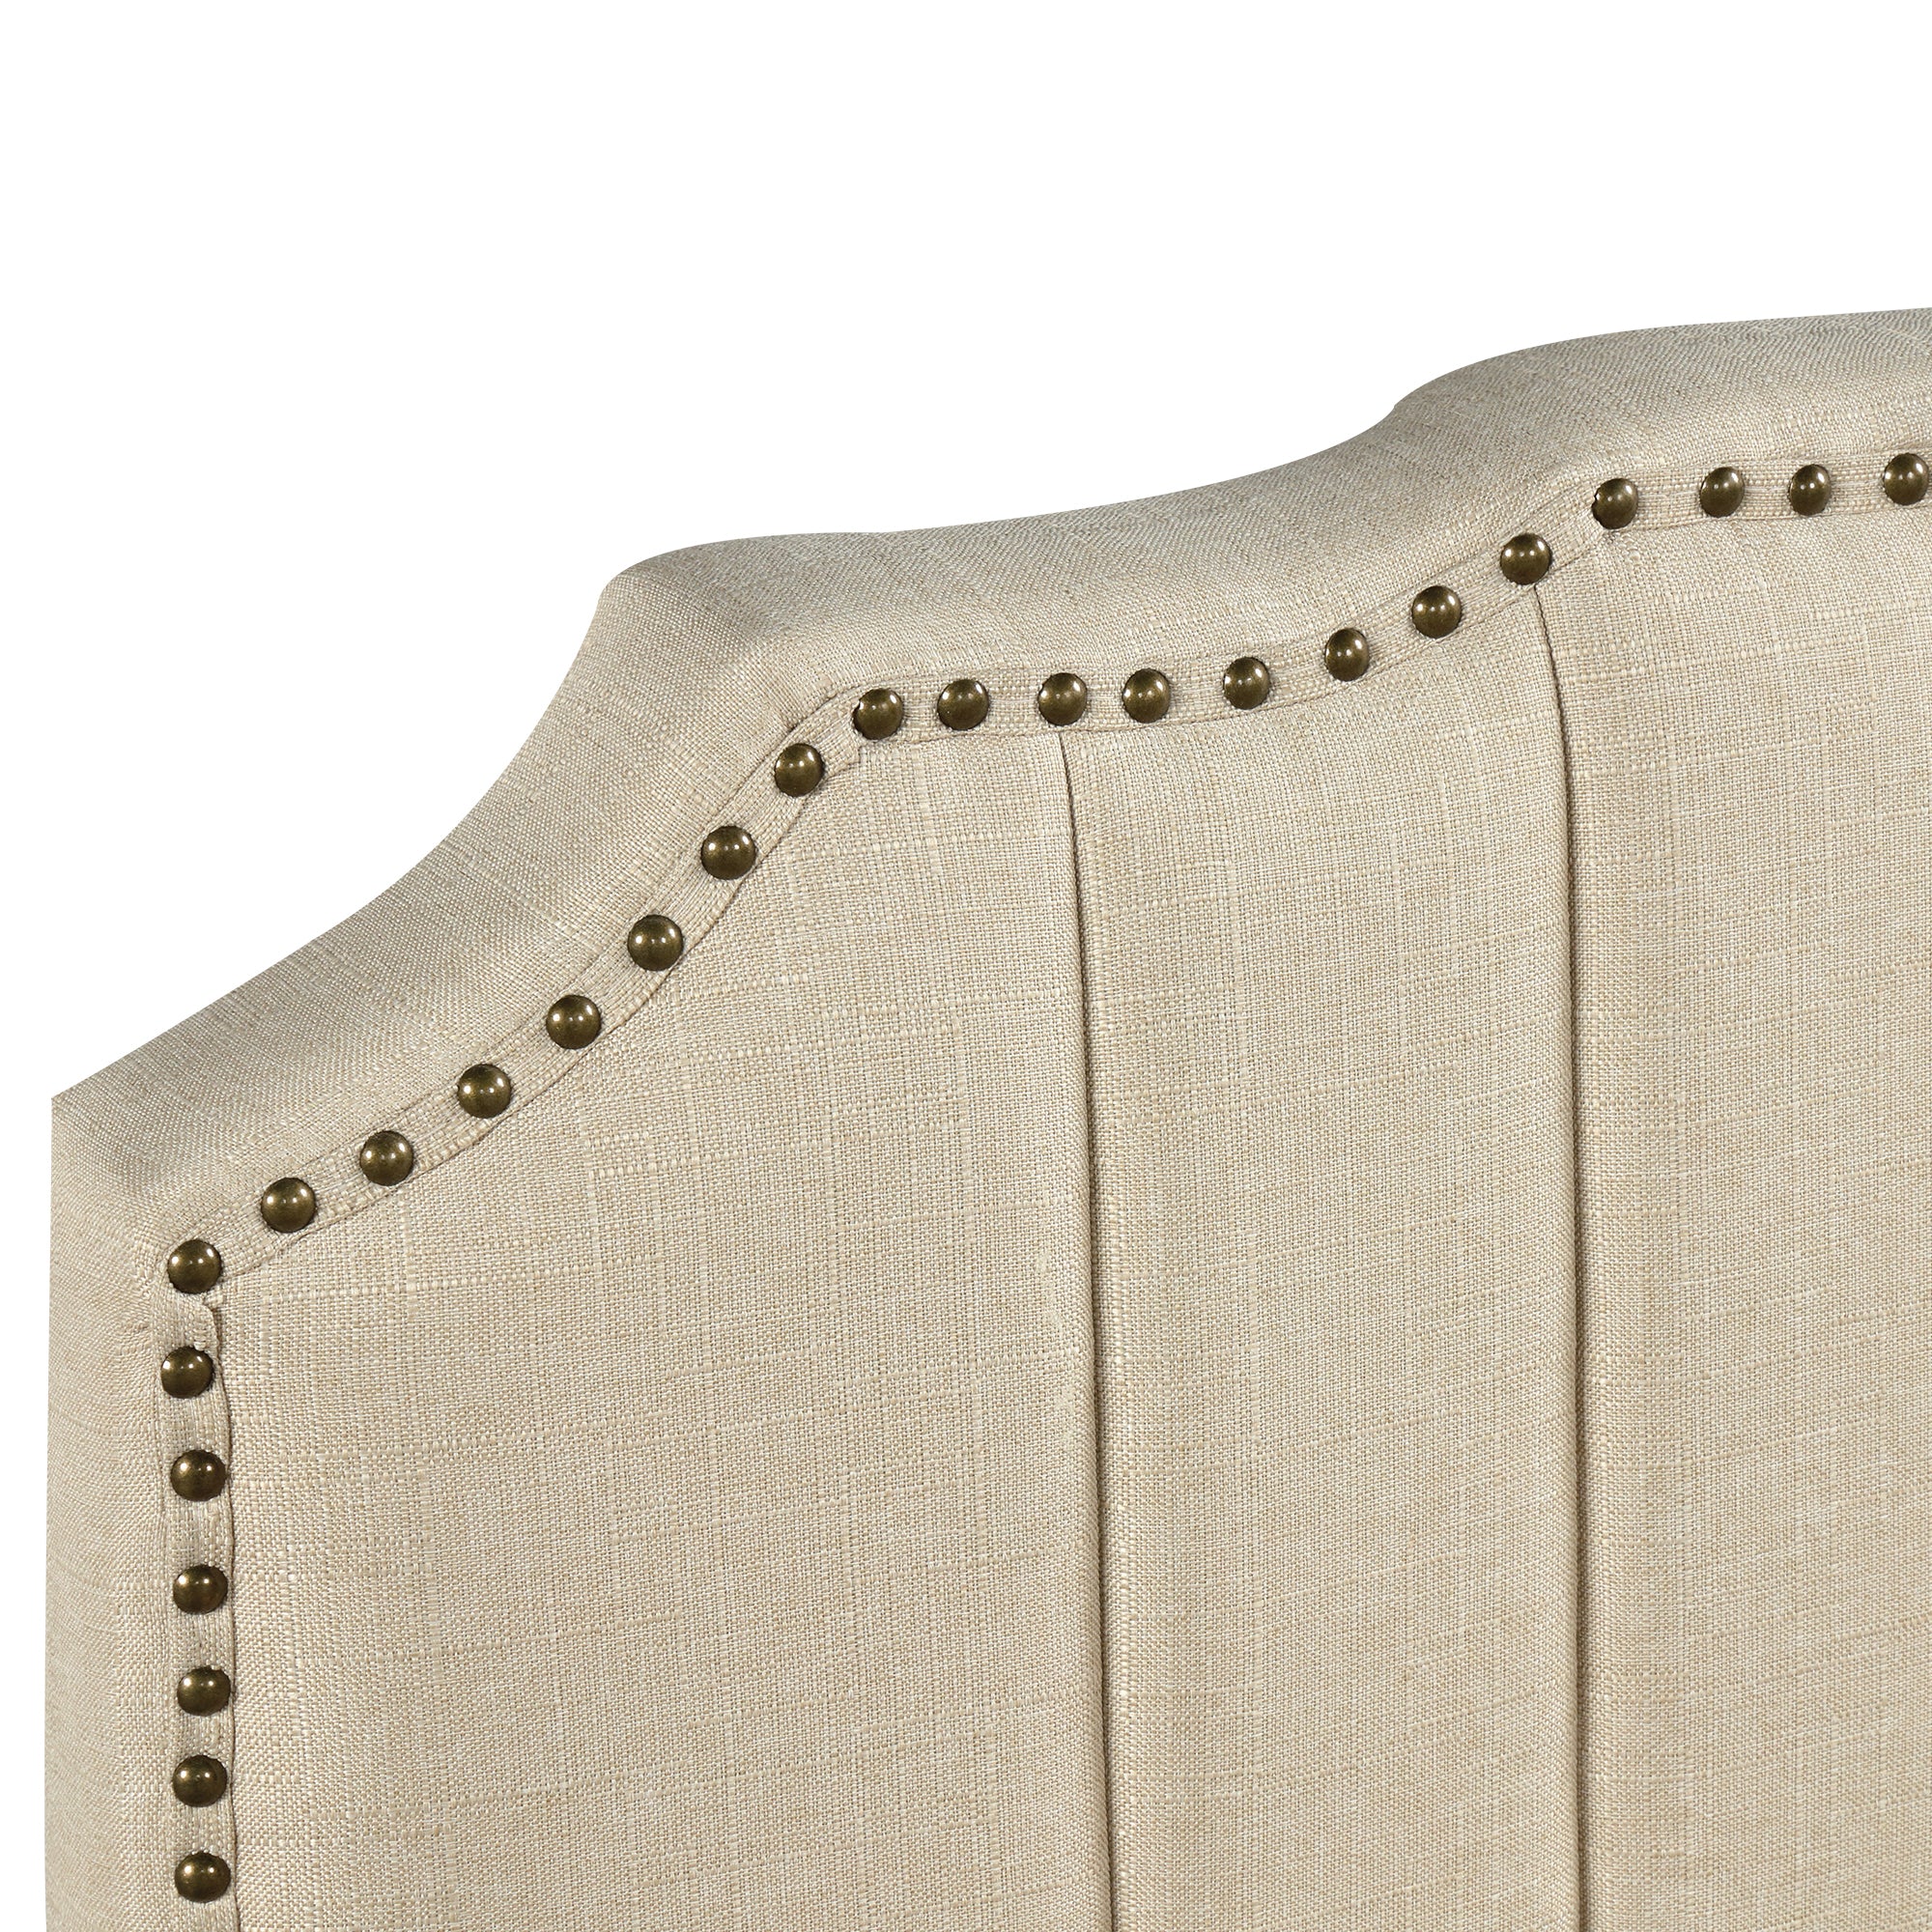 Modern Linen Curved Upholstered Platform Bed Solid Wood Frame Queen (Cream)